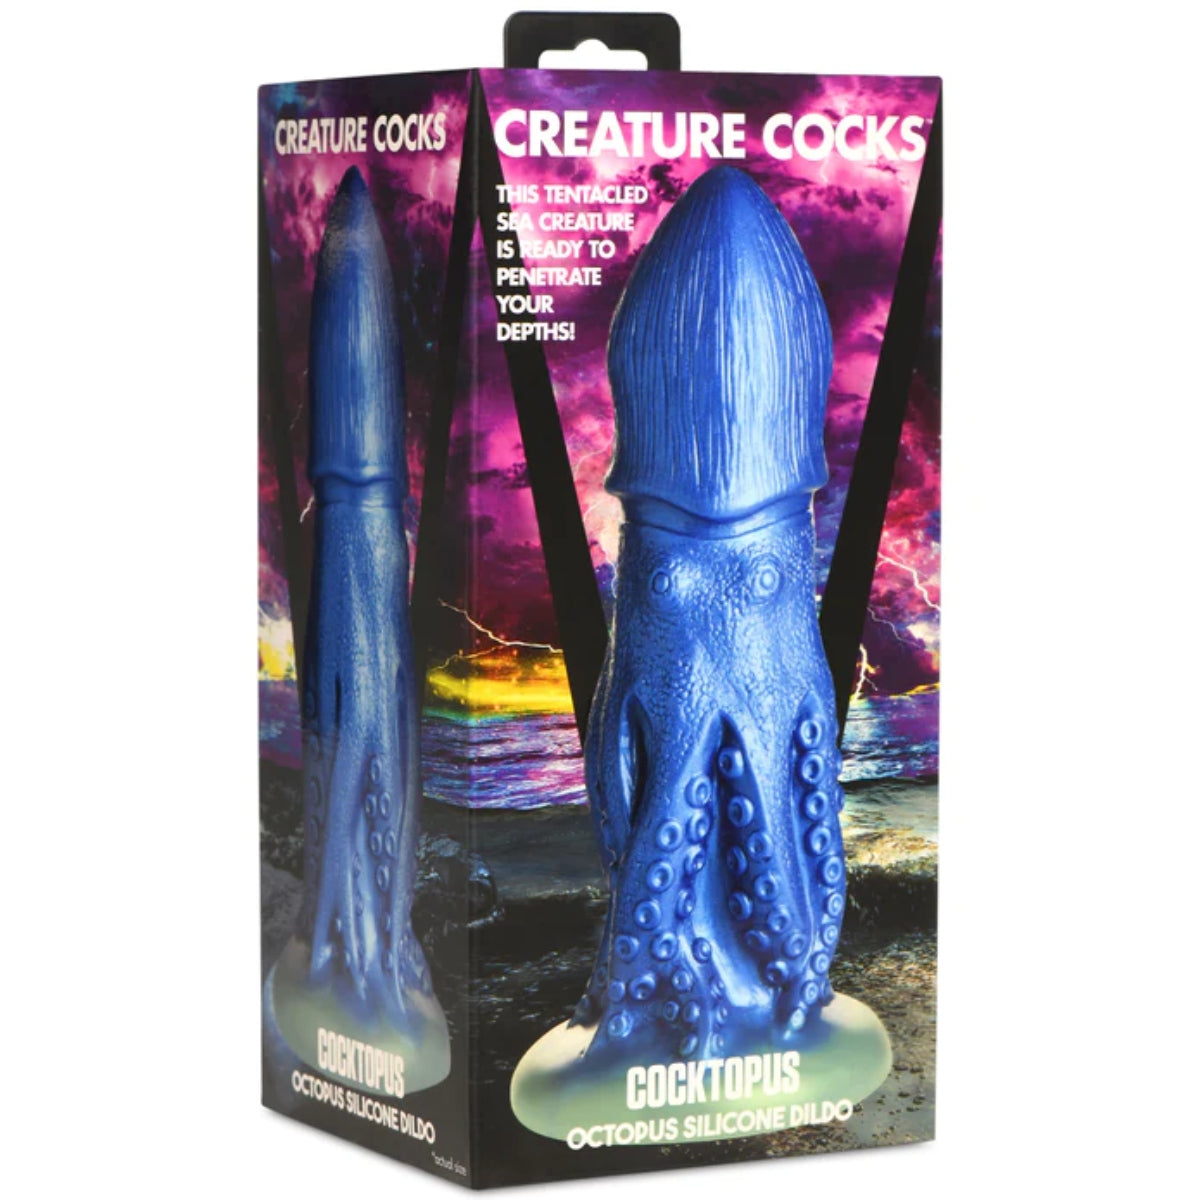 Creature Cocks | Cocktopus Octopus Silicone Dildo